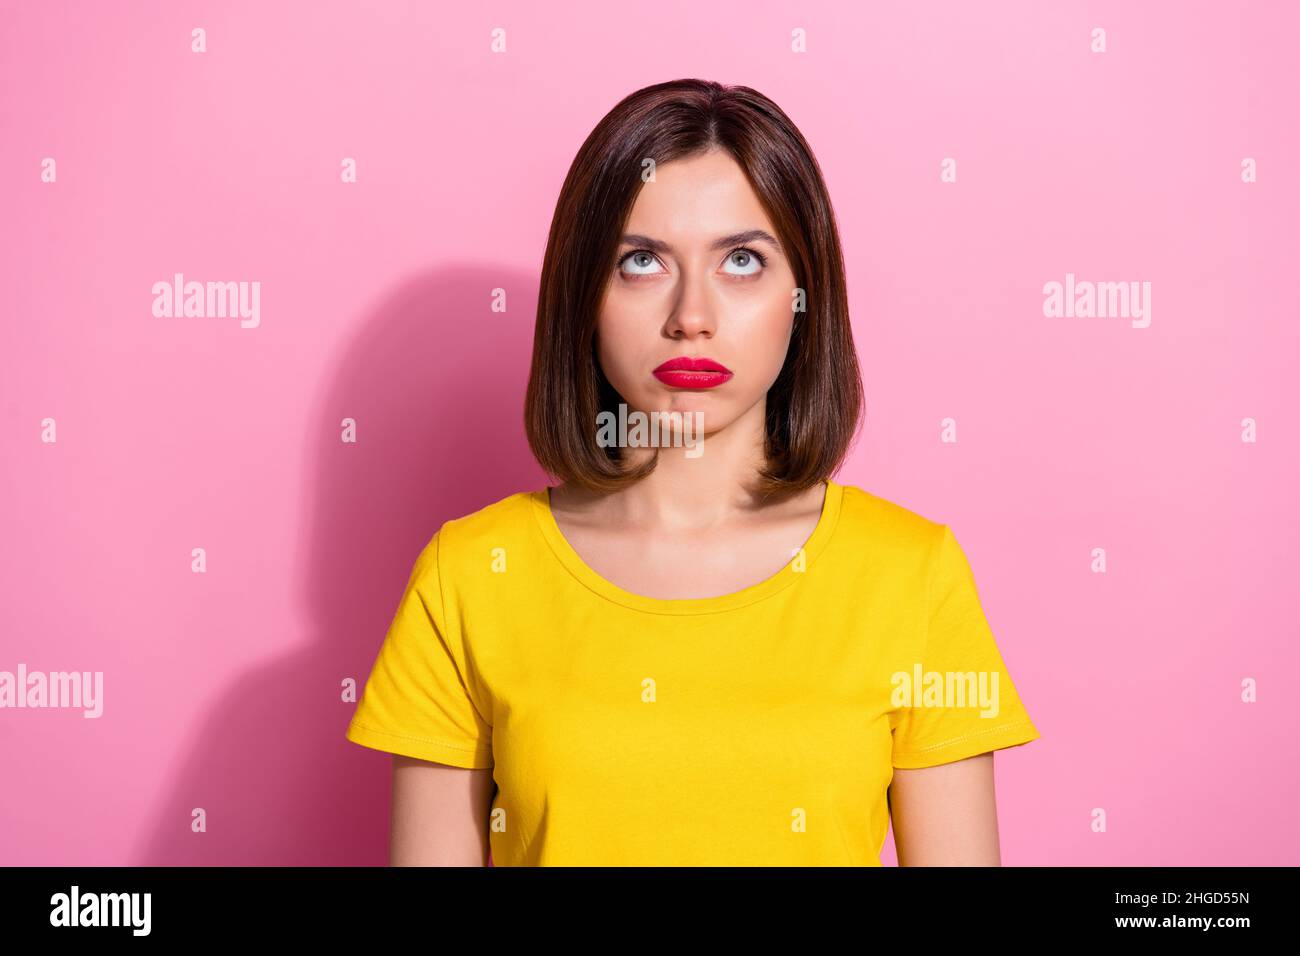 Portrait d'une jolie fille à cheveux bruns brochée à la recherche isolée sur fond rose pastel Banque D'Images